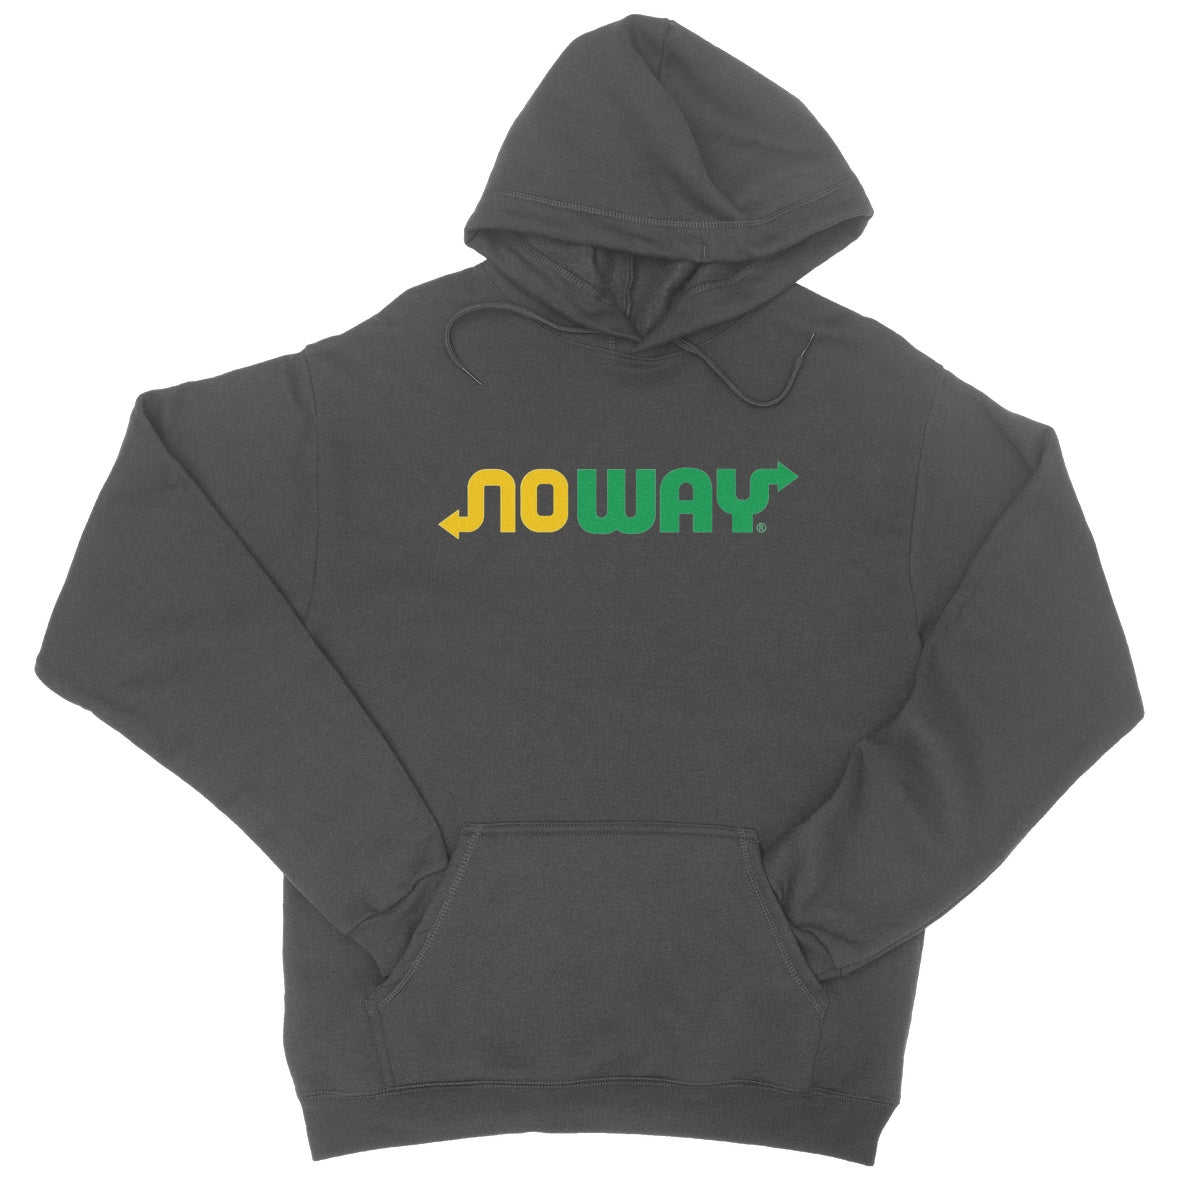 noway hoodie grey